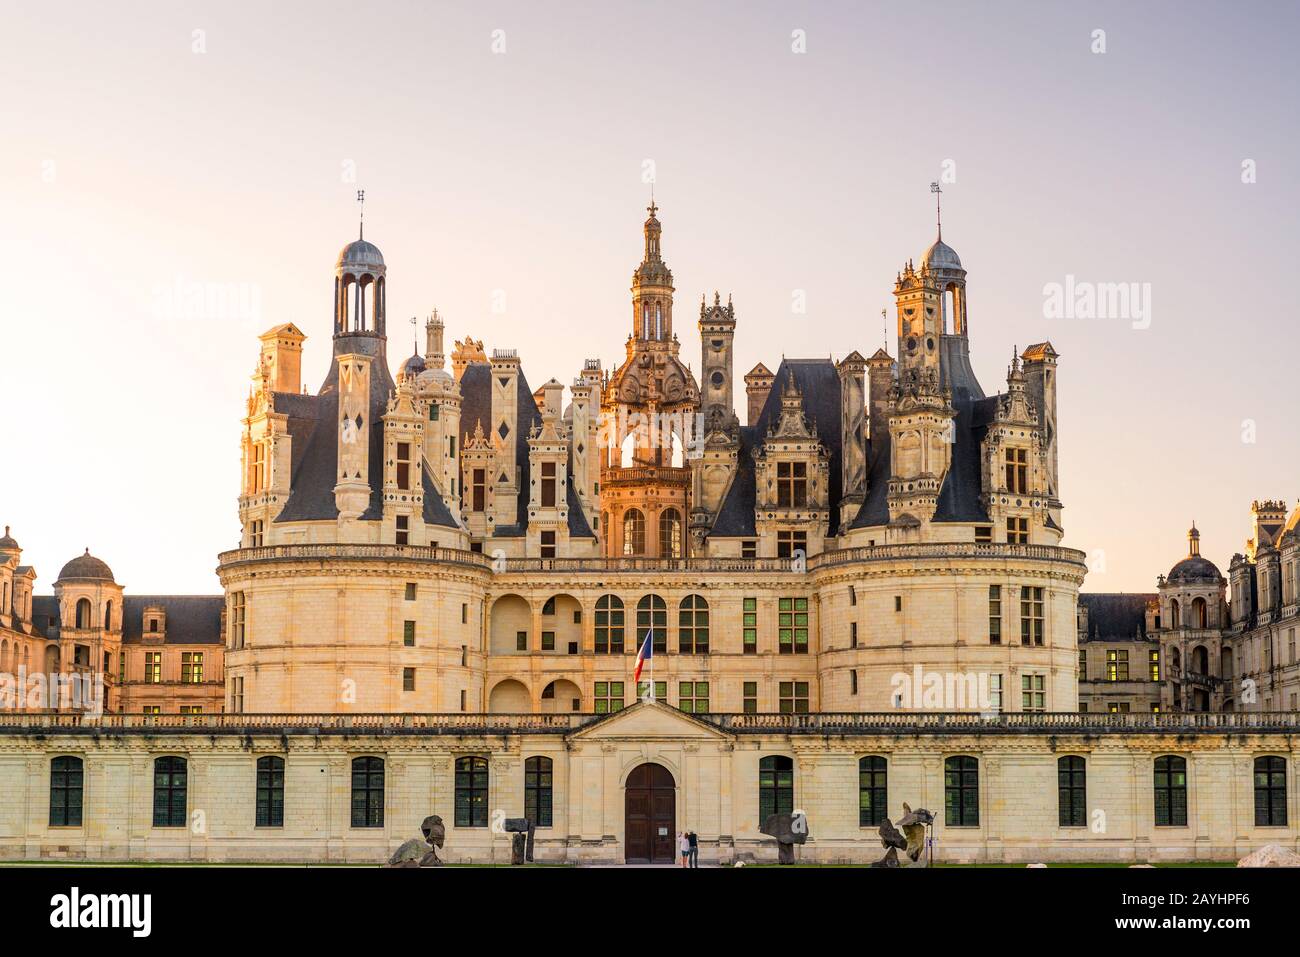 El castillo real de Chambord, Francia. Este castillo está situado en el valle del Loira, fue construido en el siglo 16 y es uno de los más reconocibles c Foto de stock